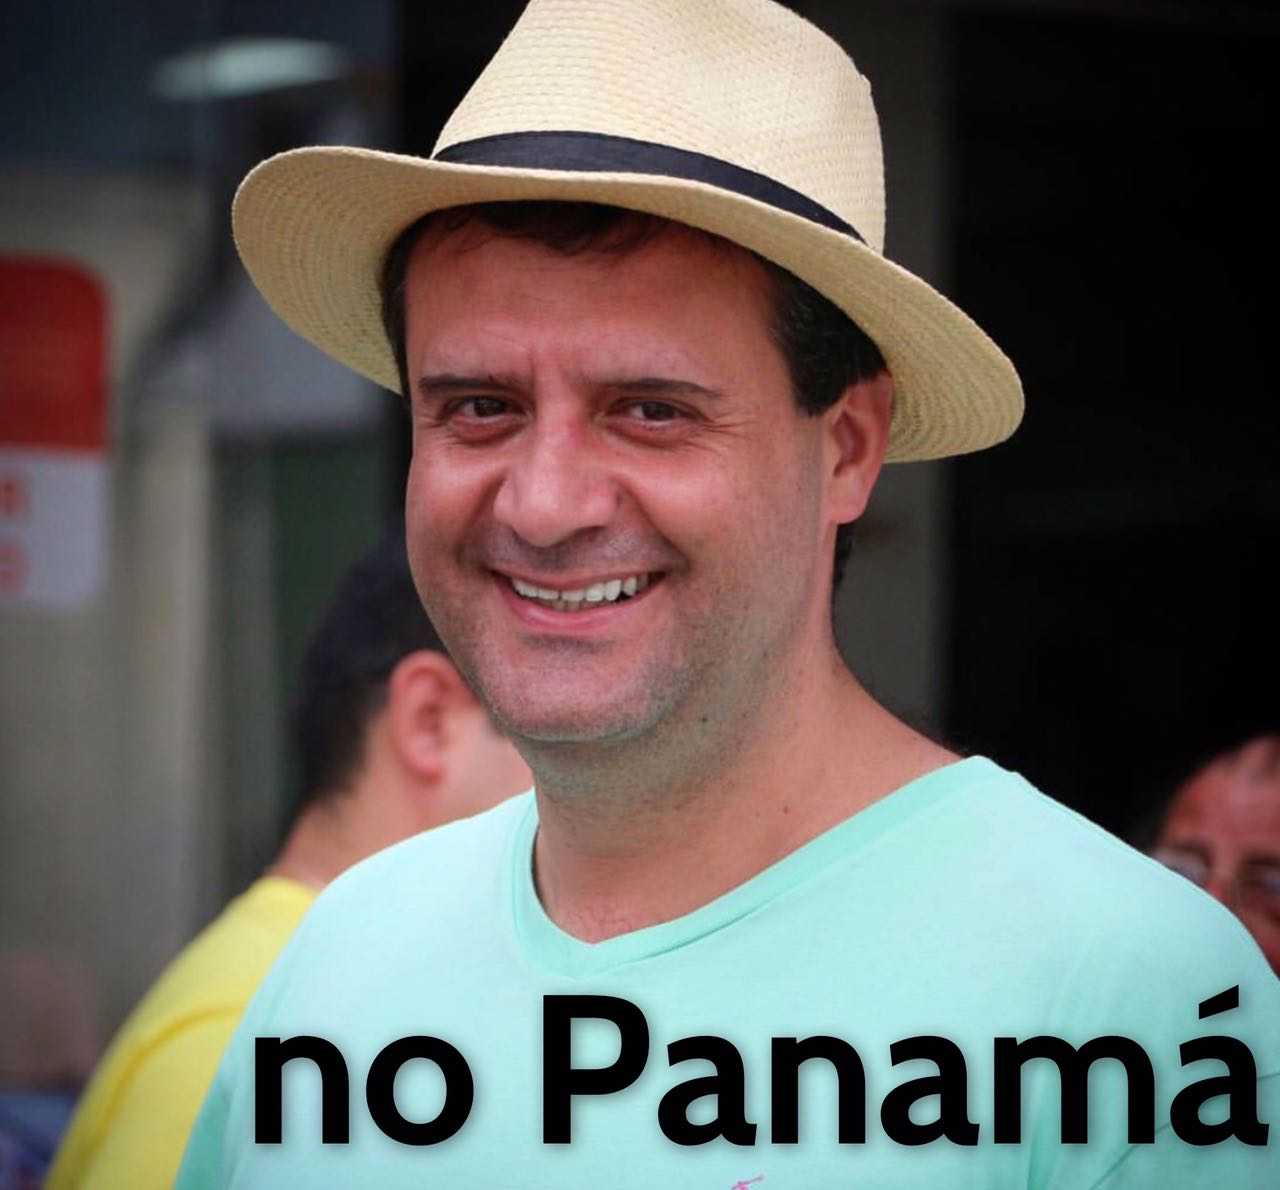 Marcelo Serafim no Panamá / Recebido pelo Whatsapp